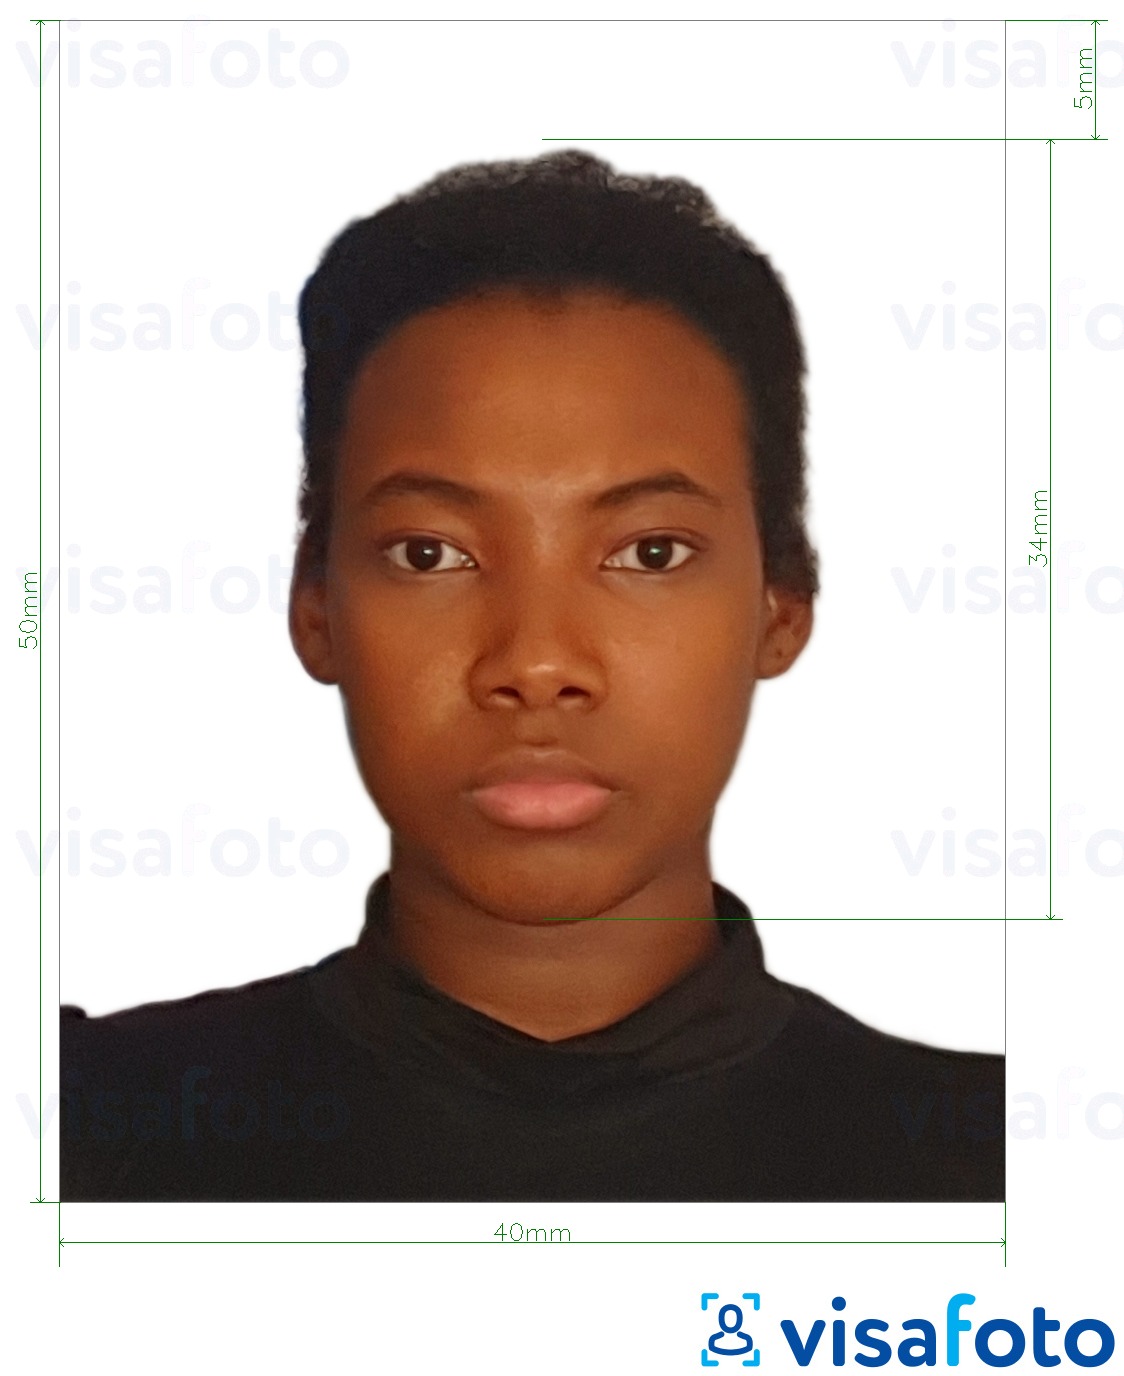 Exemples sur des photos pour Visa République Dominicaine 4x5 cm avec les spécifications de taille exactes